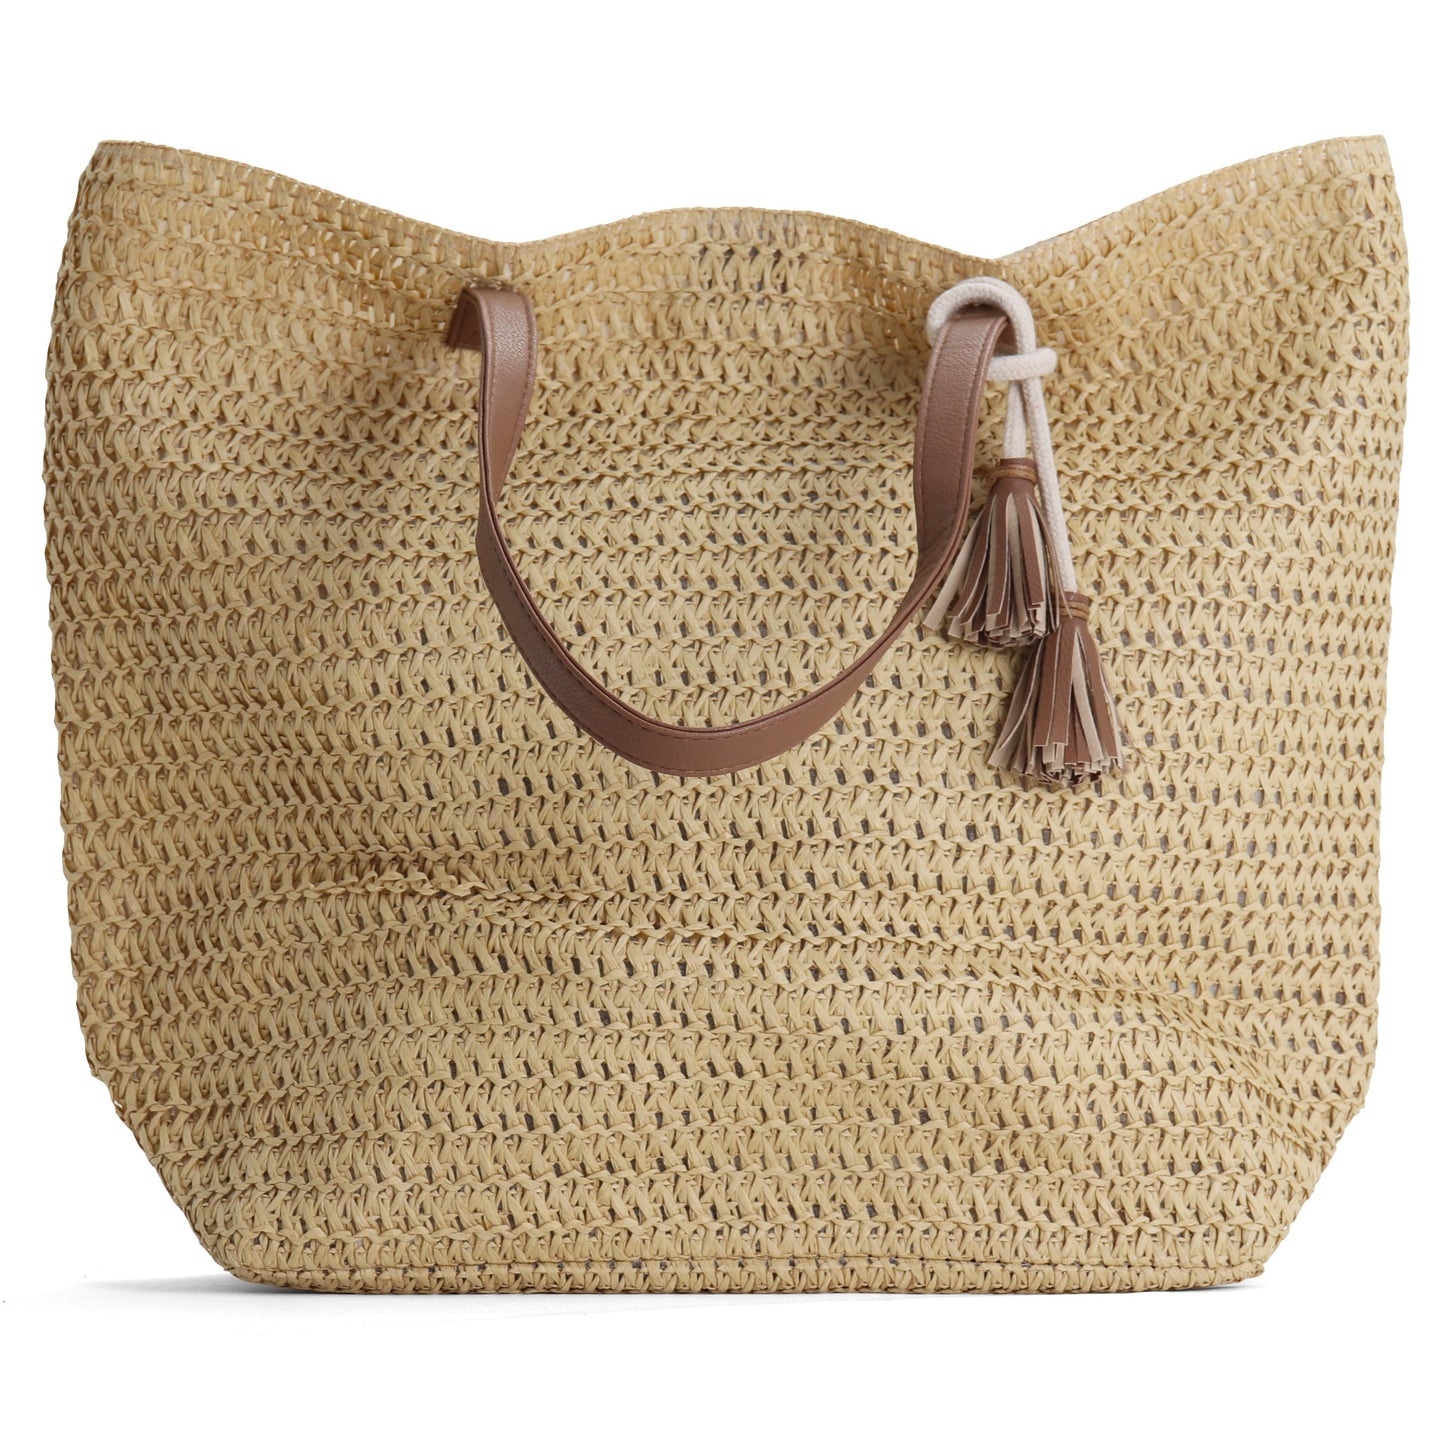 Beach Bag - Straw Bag - Large Tote Bag - Brown